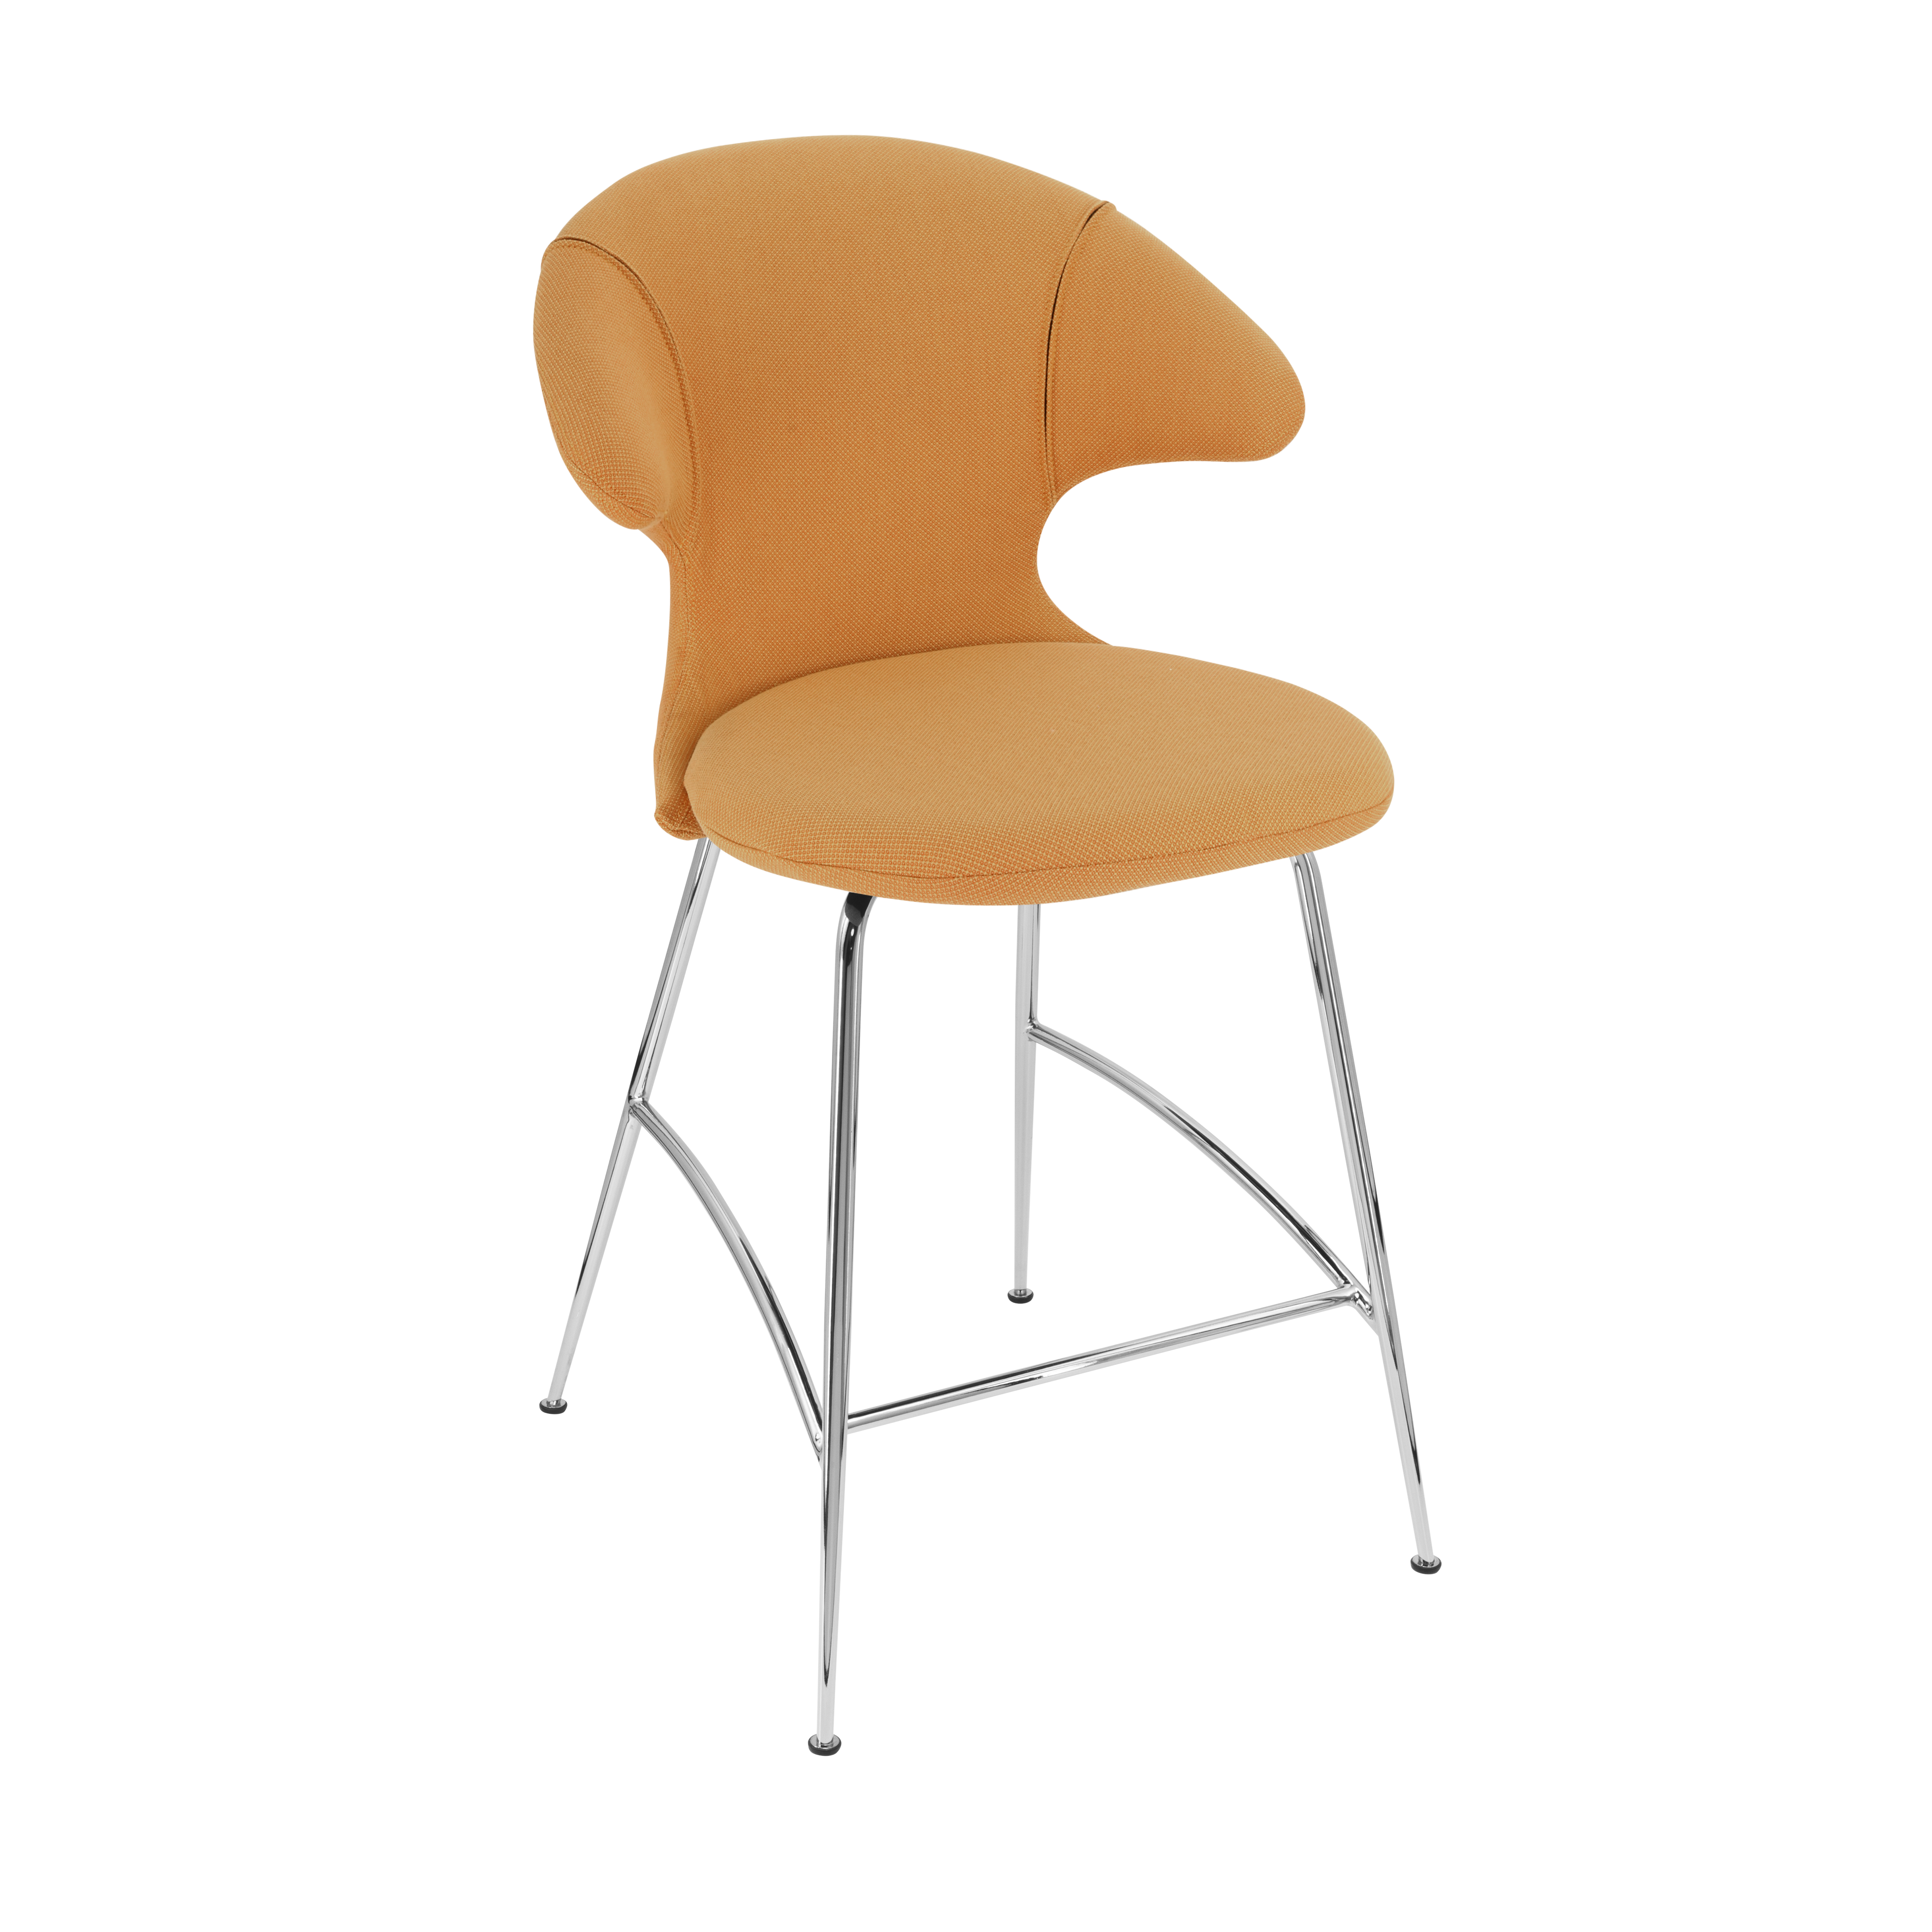 Time Flies Counter Stuhl in Tangerine präsentiert im Onlineshop von KAQTU Design AG. Barstuhl mit Armlehne ist von Umage